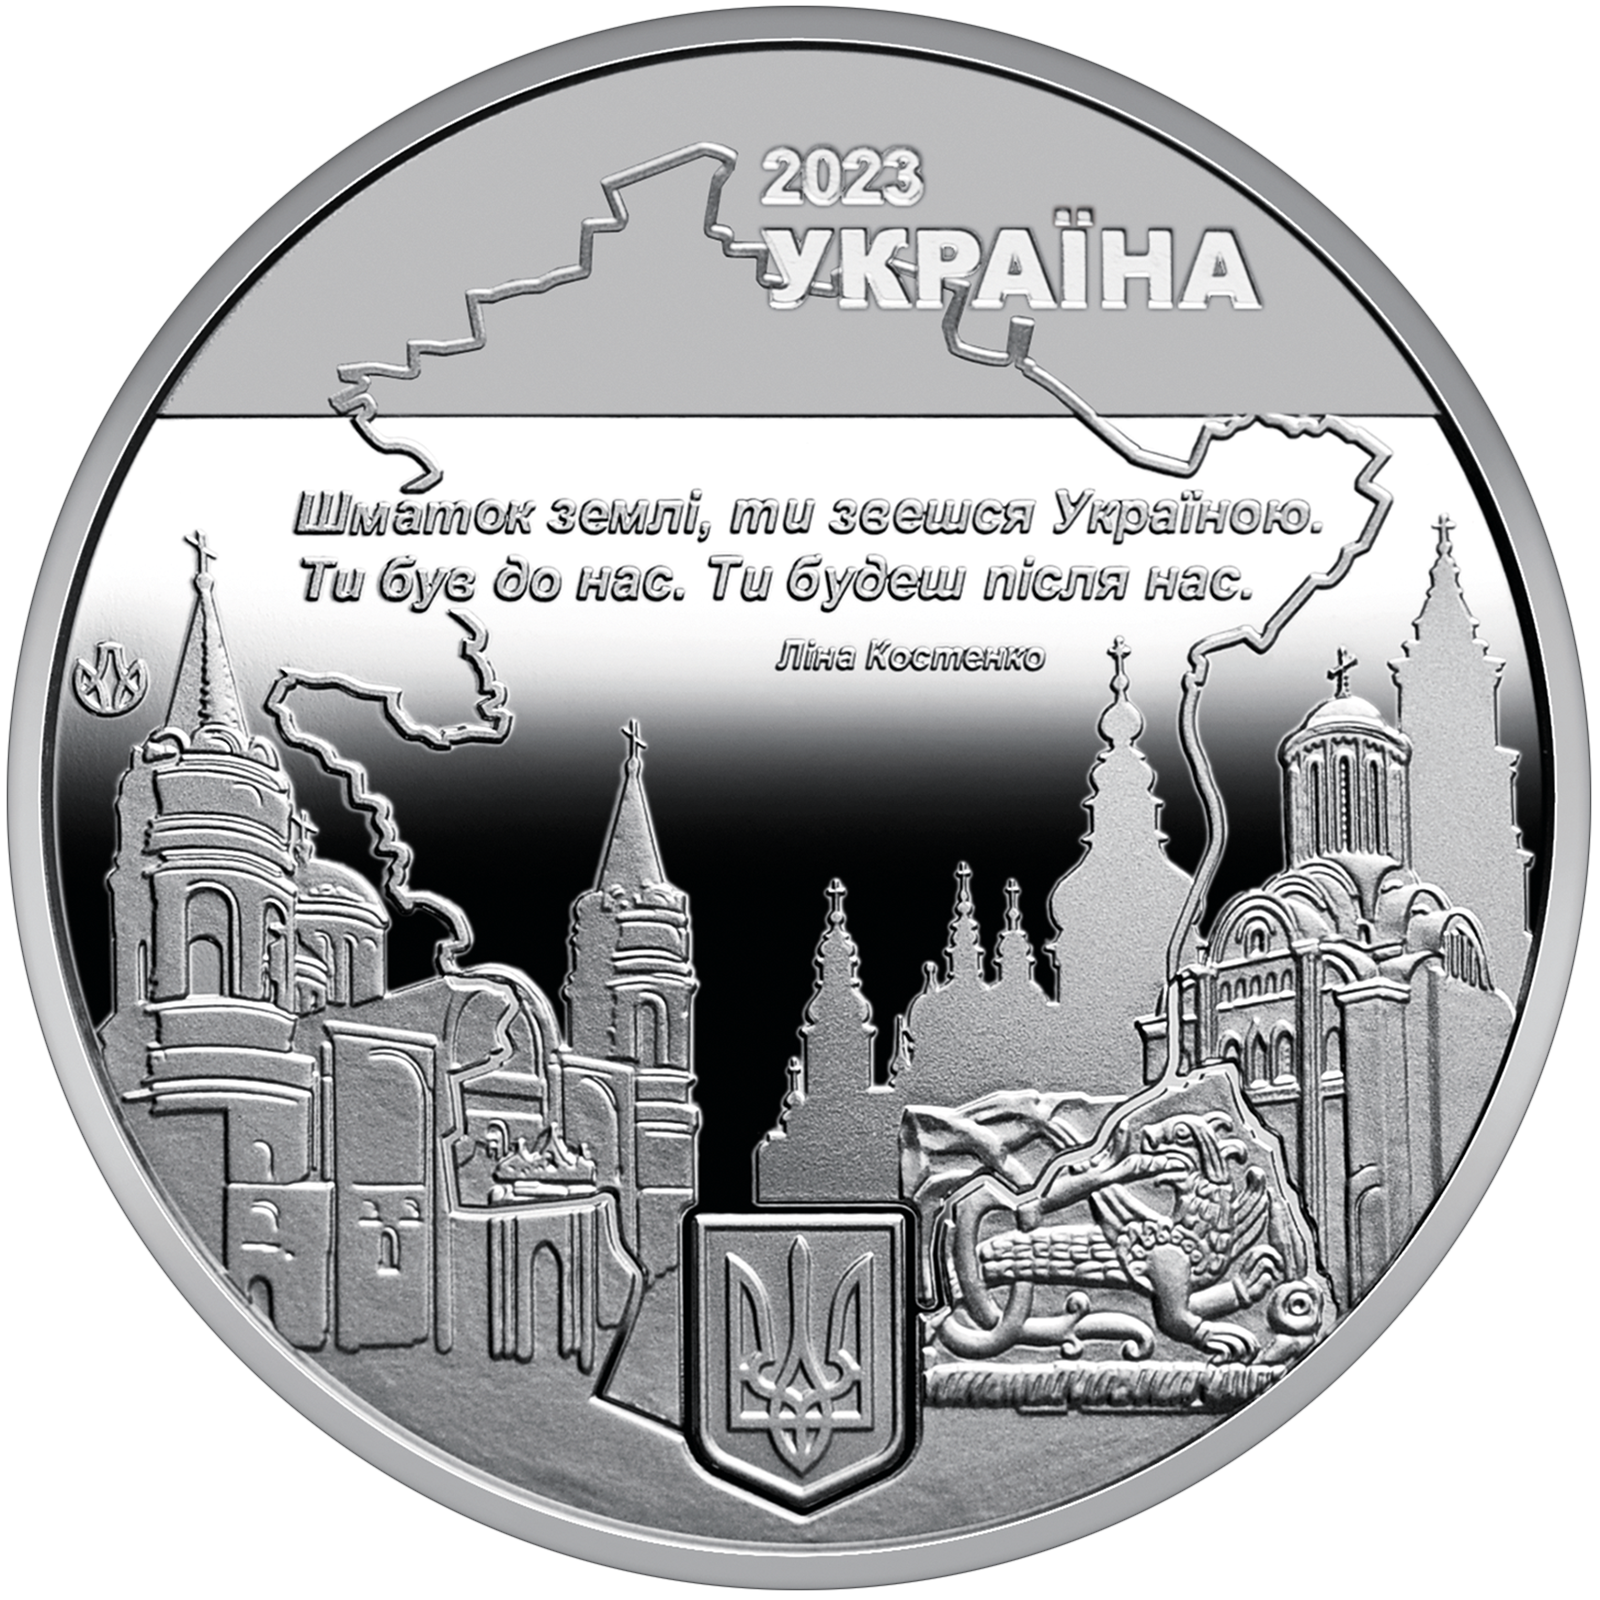 Пам`ятна медаль `Місто героїв - Чернігів`